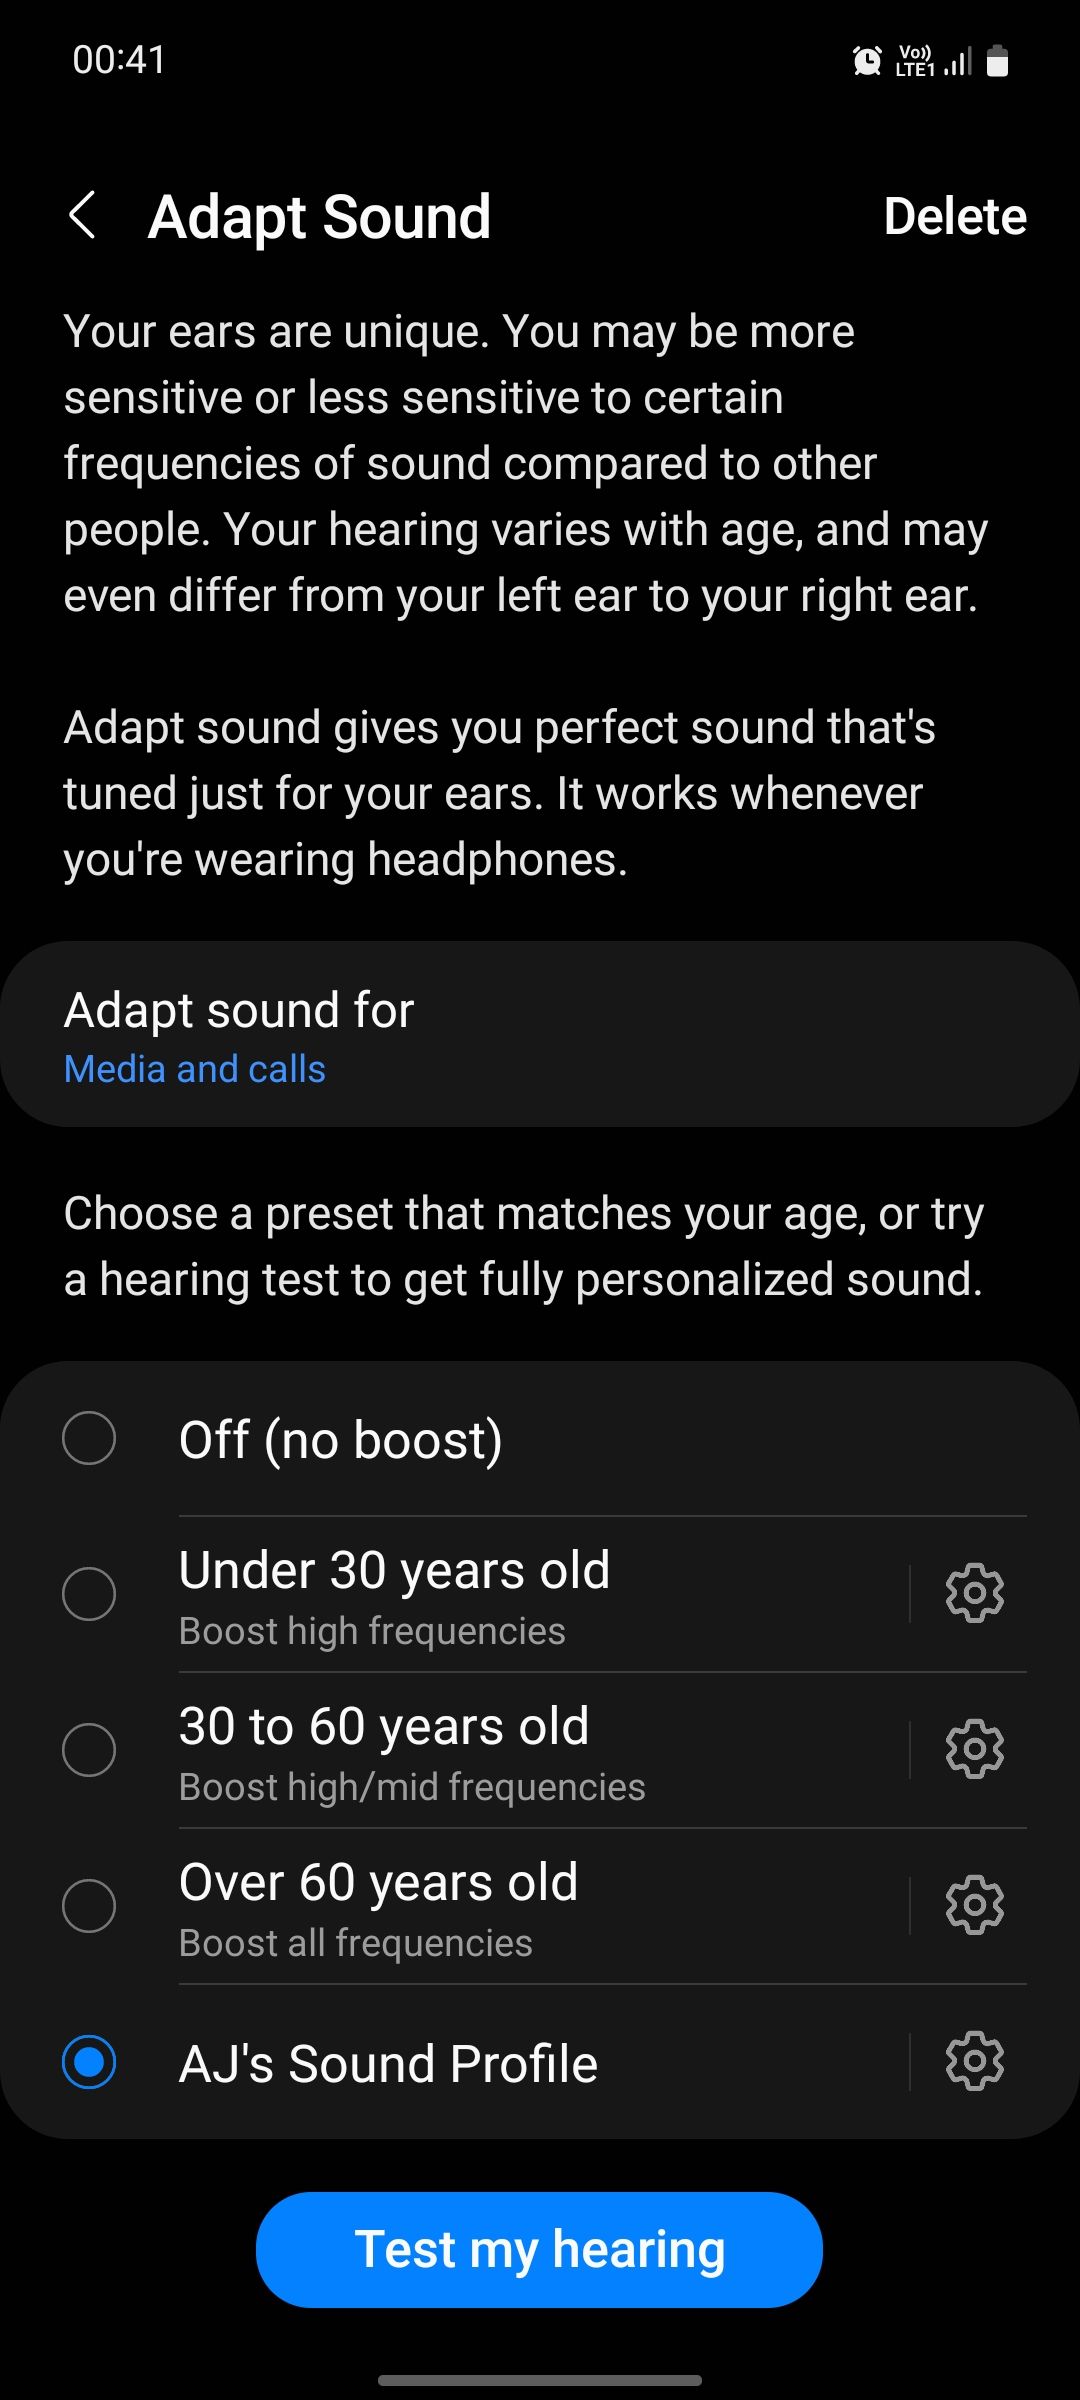 Samsung Adapt Sound after test